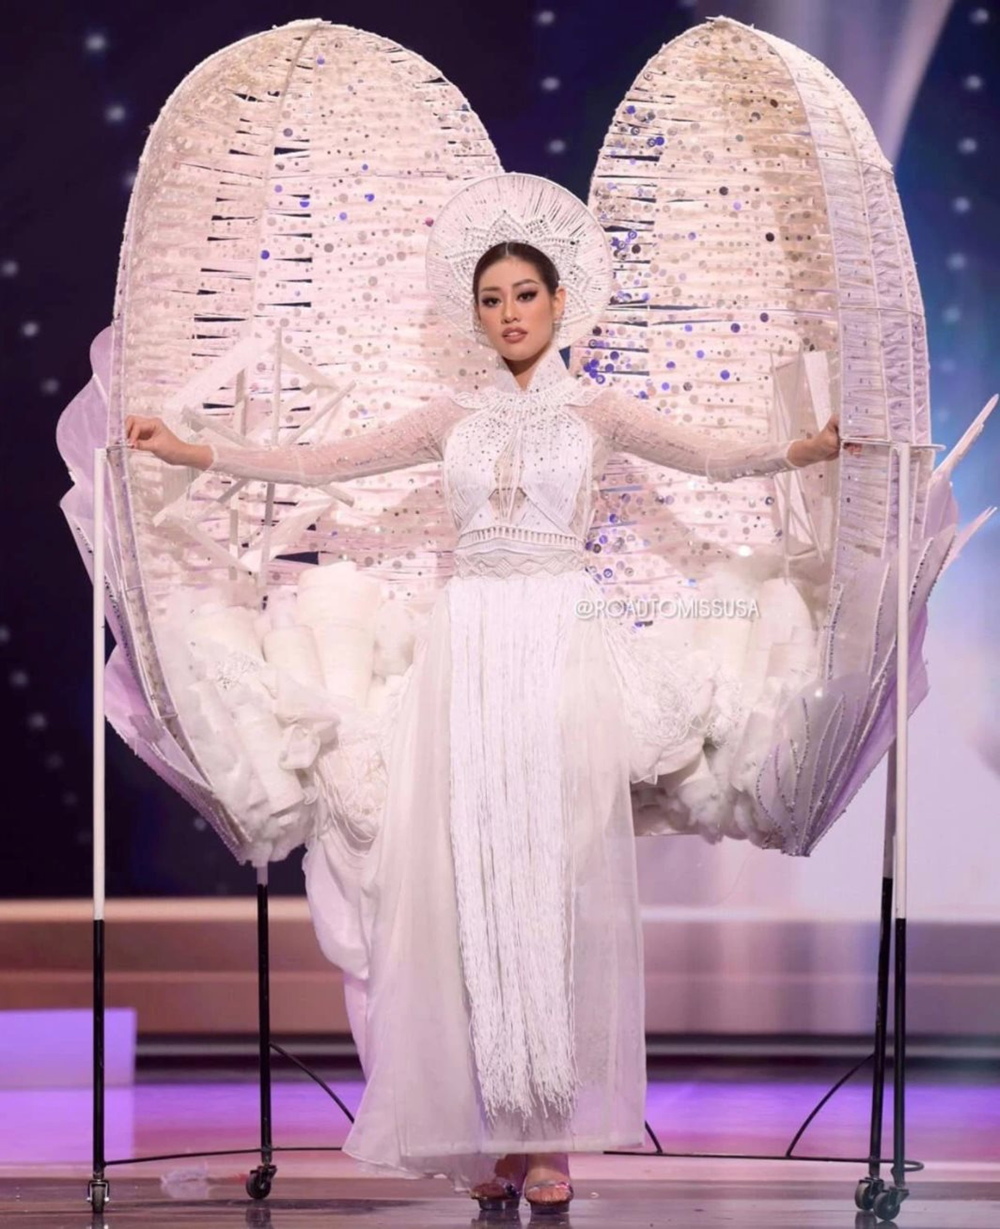 Hoa hậu Khánh Vân tự tin trình diễn “Kén Em” tại Miss Universe 2020 - ảnh 3